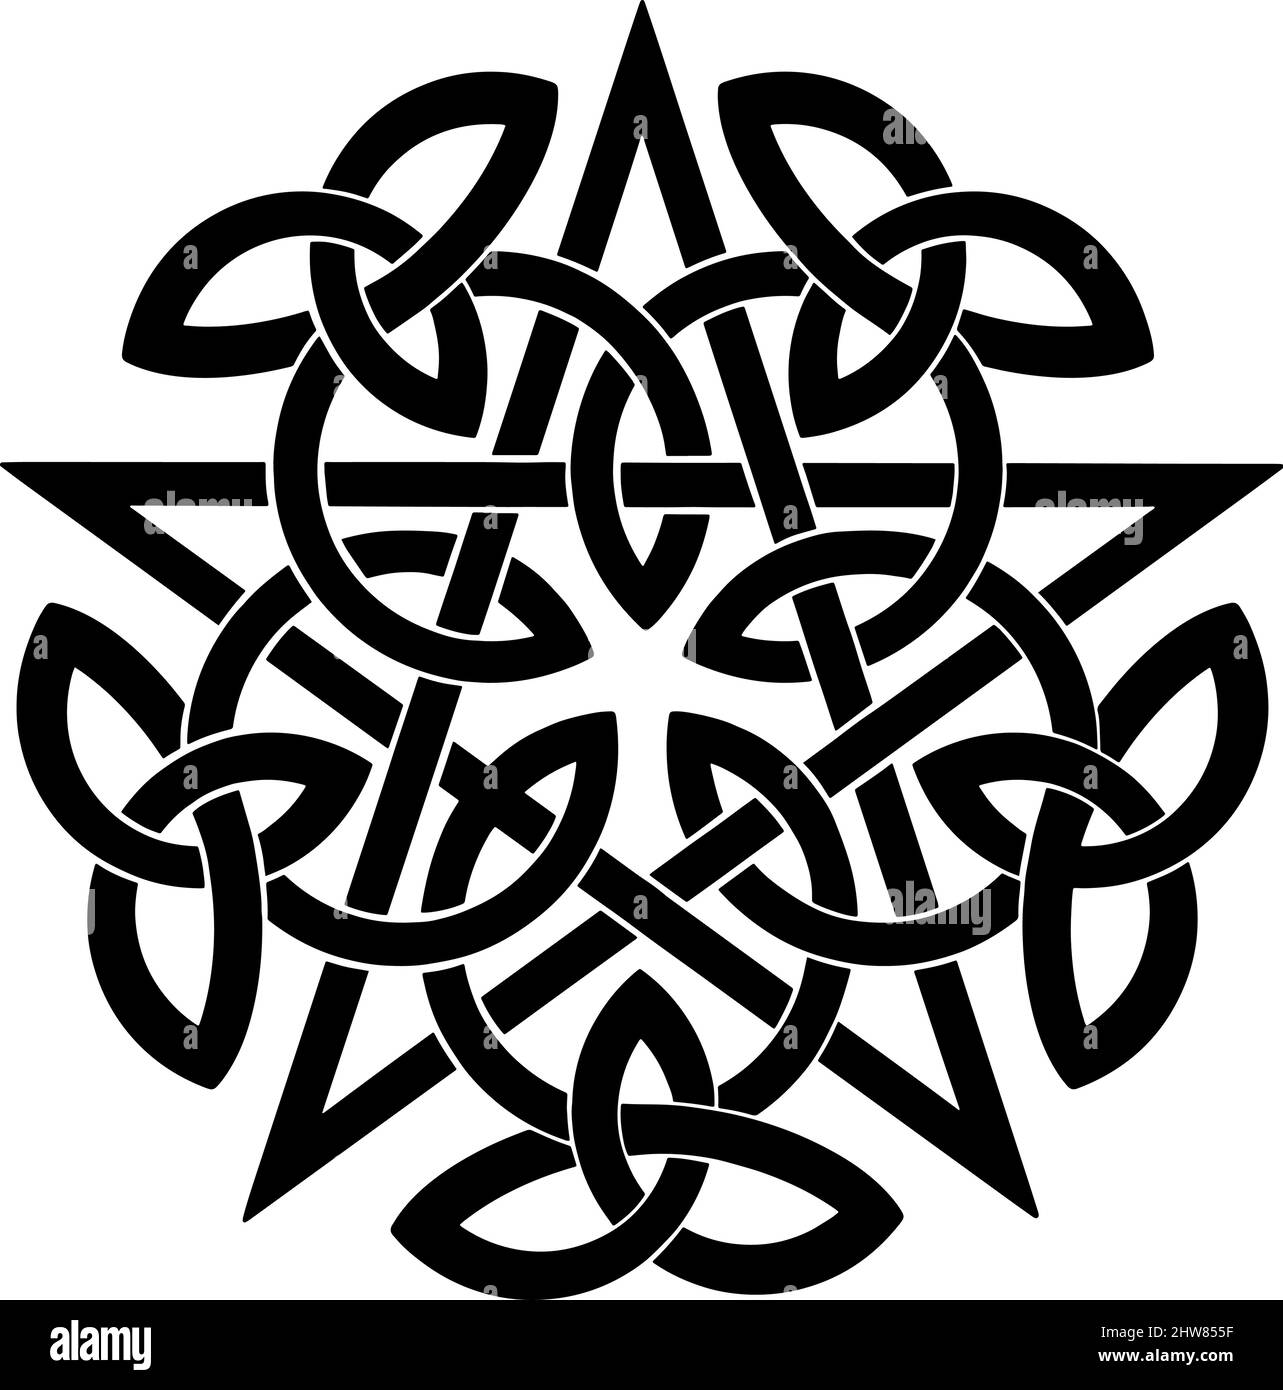 Schwarzes Pentagramm mit keltischen Knoten. Vektorgrafik Stock Vektor